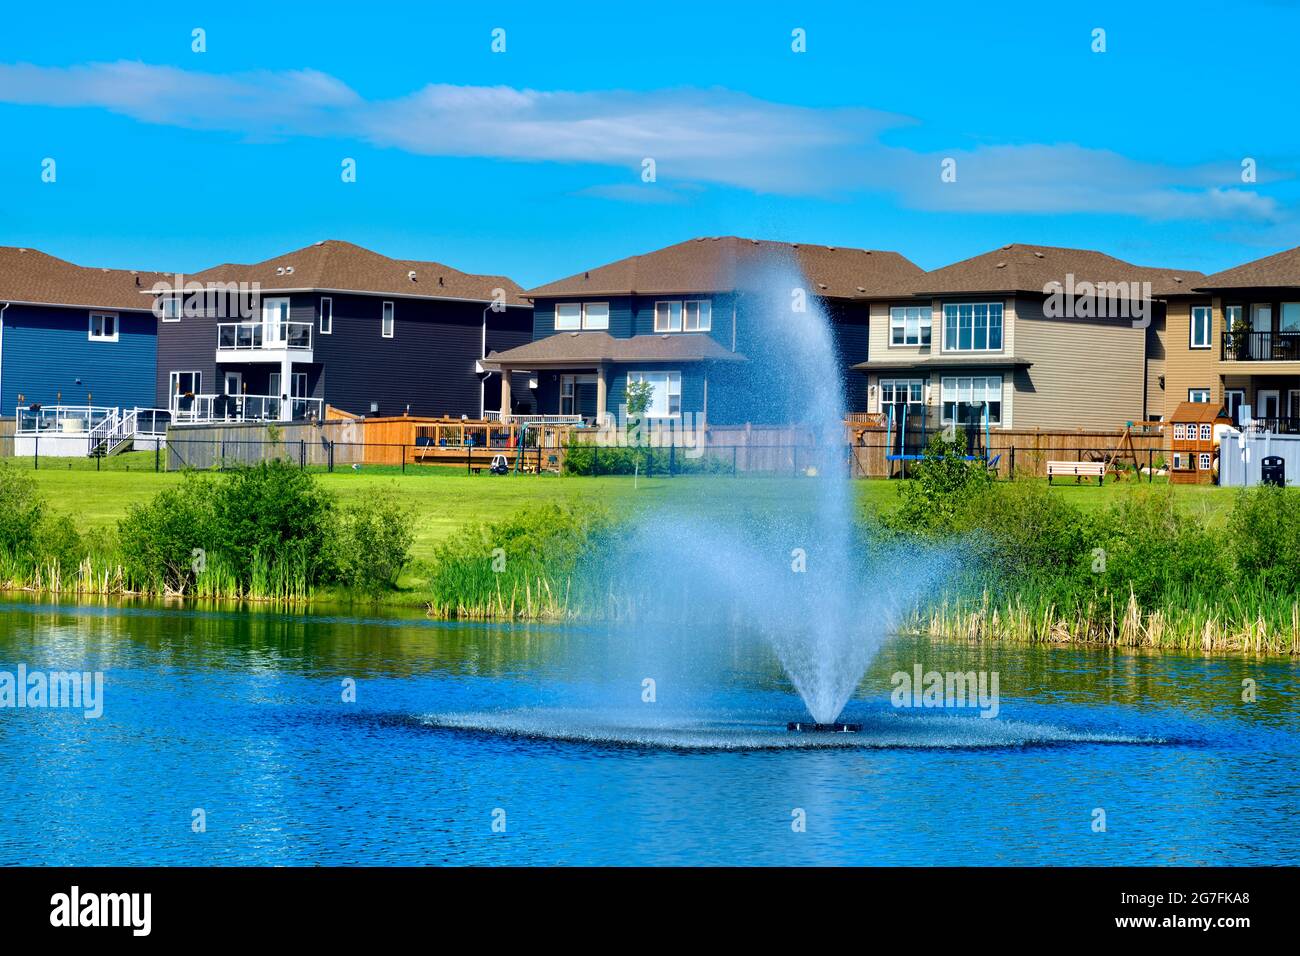 Urbanes Leben mit Grünflächen, einem Teich, Häusern und blauem Himmel in Morinville, Alberta, Kanada. Stockfoto